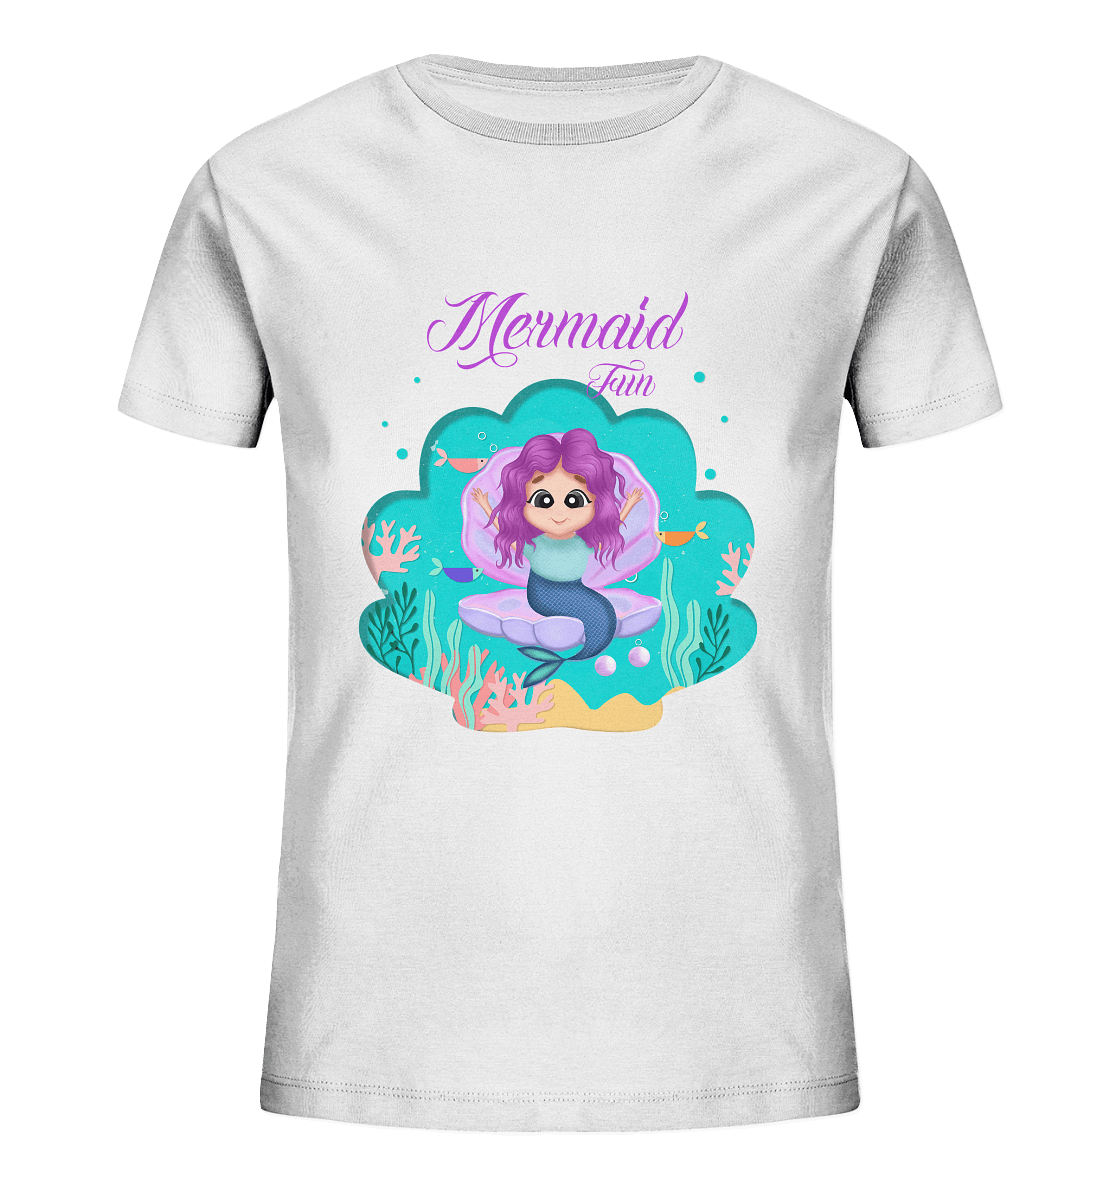 Meerjungfrau Cartoon T-Shirt mit handgezeichneten Mermaid Cartoon und Beschriftung "Mermaid Fun" baby ariel T-Shirt in weiß